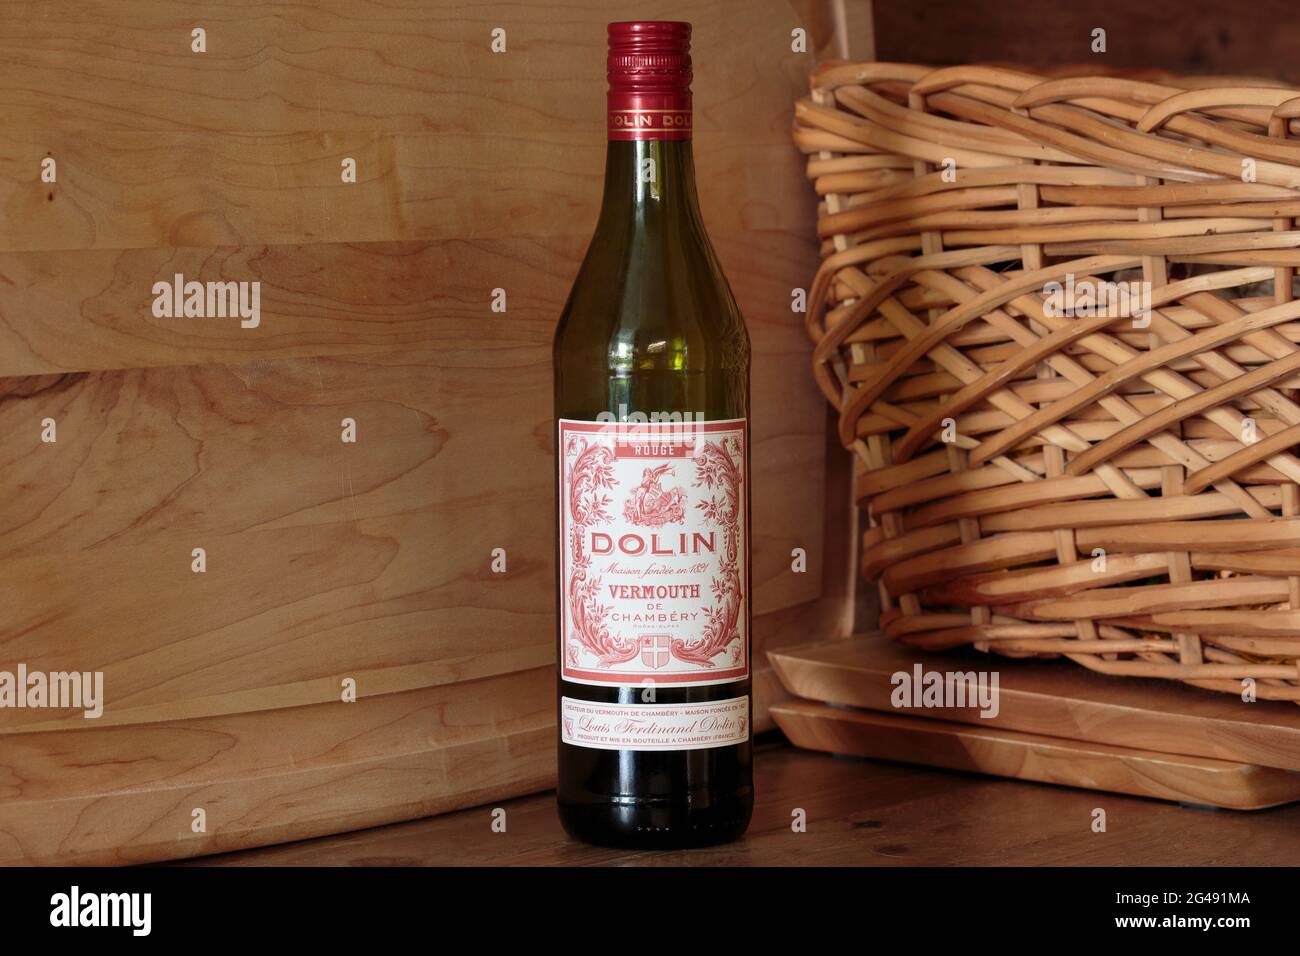 Flasche Dolin Brand Red Wermouth, ein französischer alpenländischer Wein, der normalerweise als Aperitif genommen wird Stockfoto